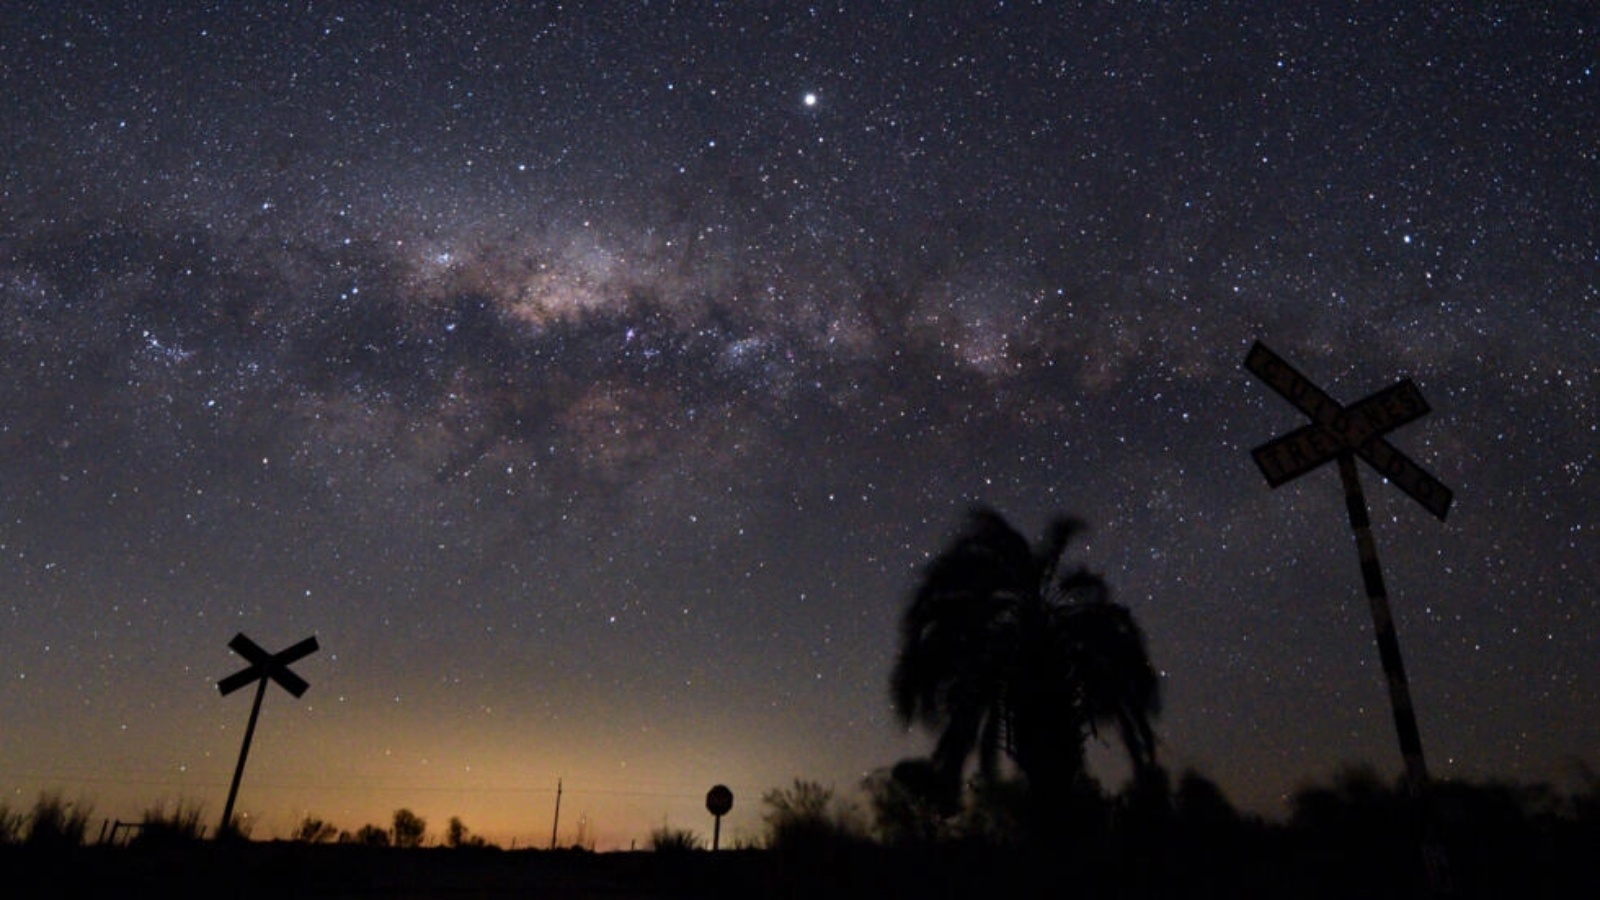 يتسبب التلوث الضوئي المتزايد بسرعة - الوهج السماوي - في صعوبة رؤية النجوم في سماء الليل بالعين المجردة